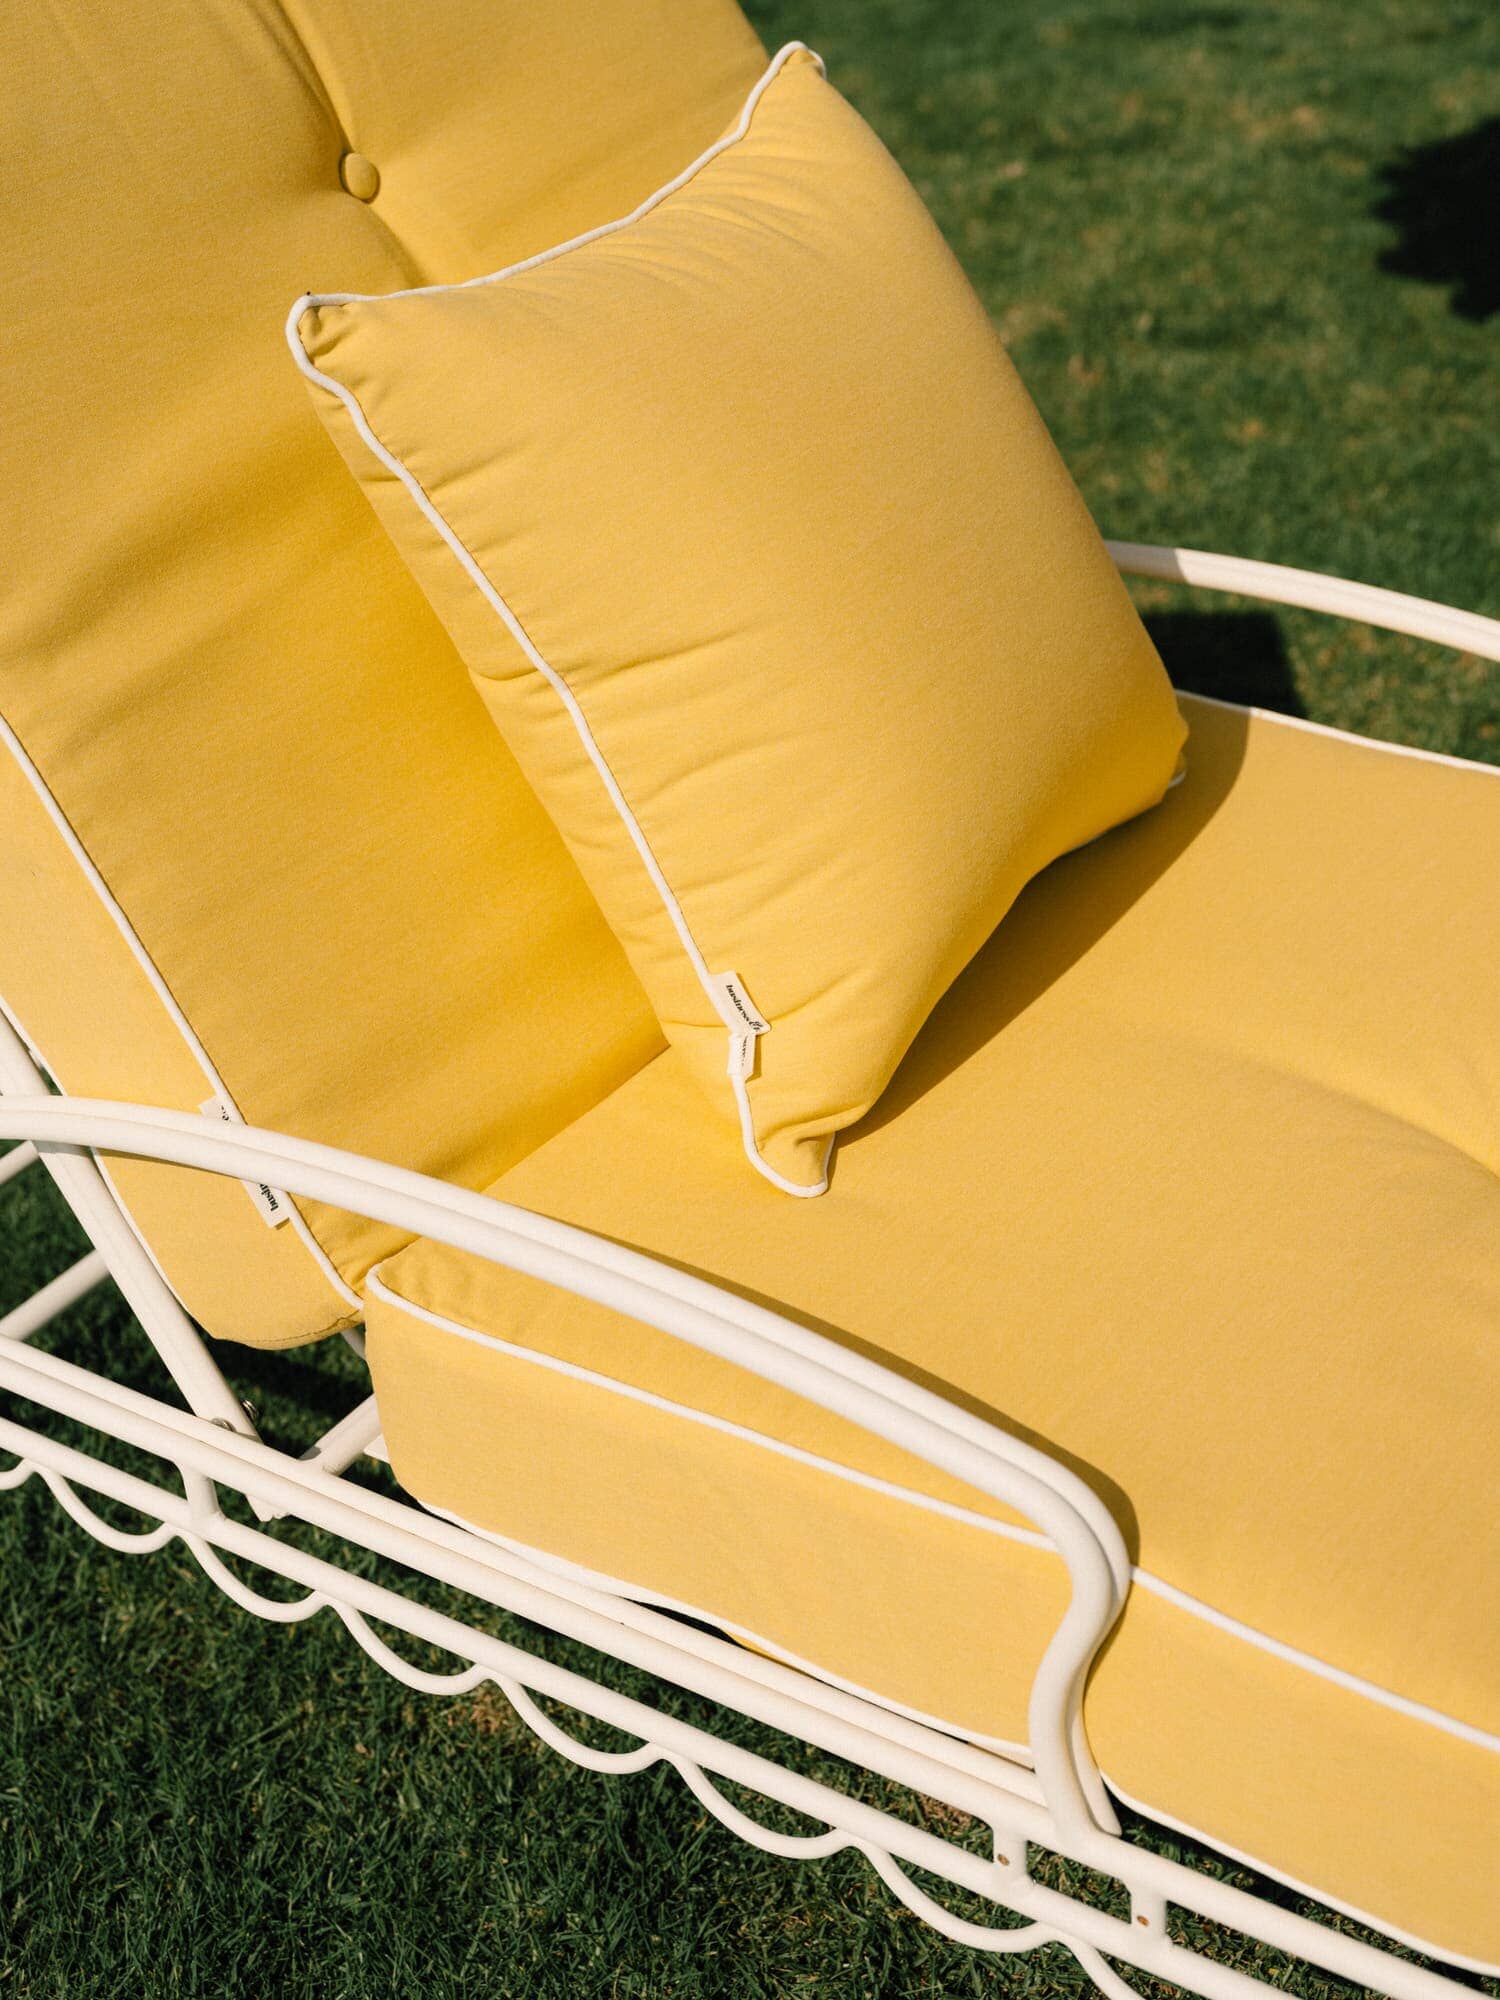 The Al Fresco Sun Lounger Cushion - Rivie Mimosa Al Fresco Sun Lounger Cushion Business & Pleasure Co Aus 